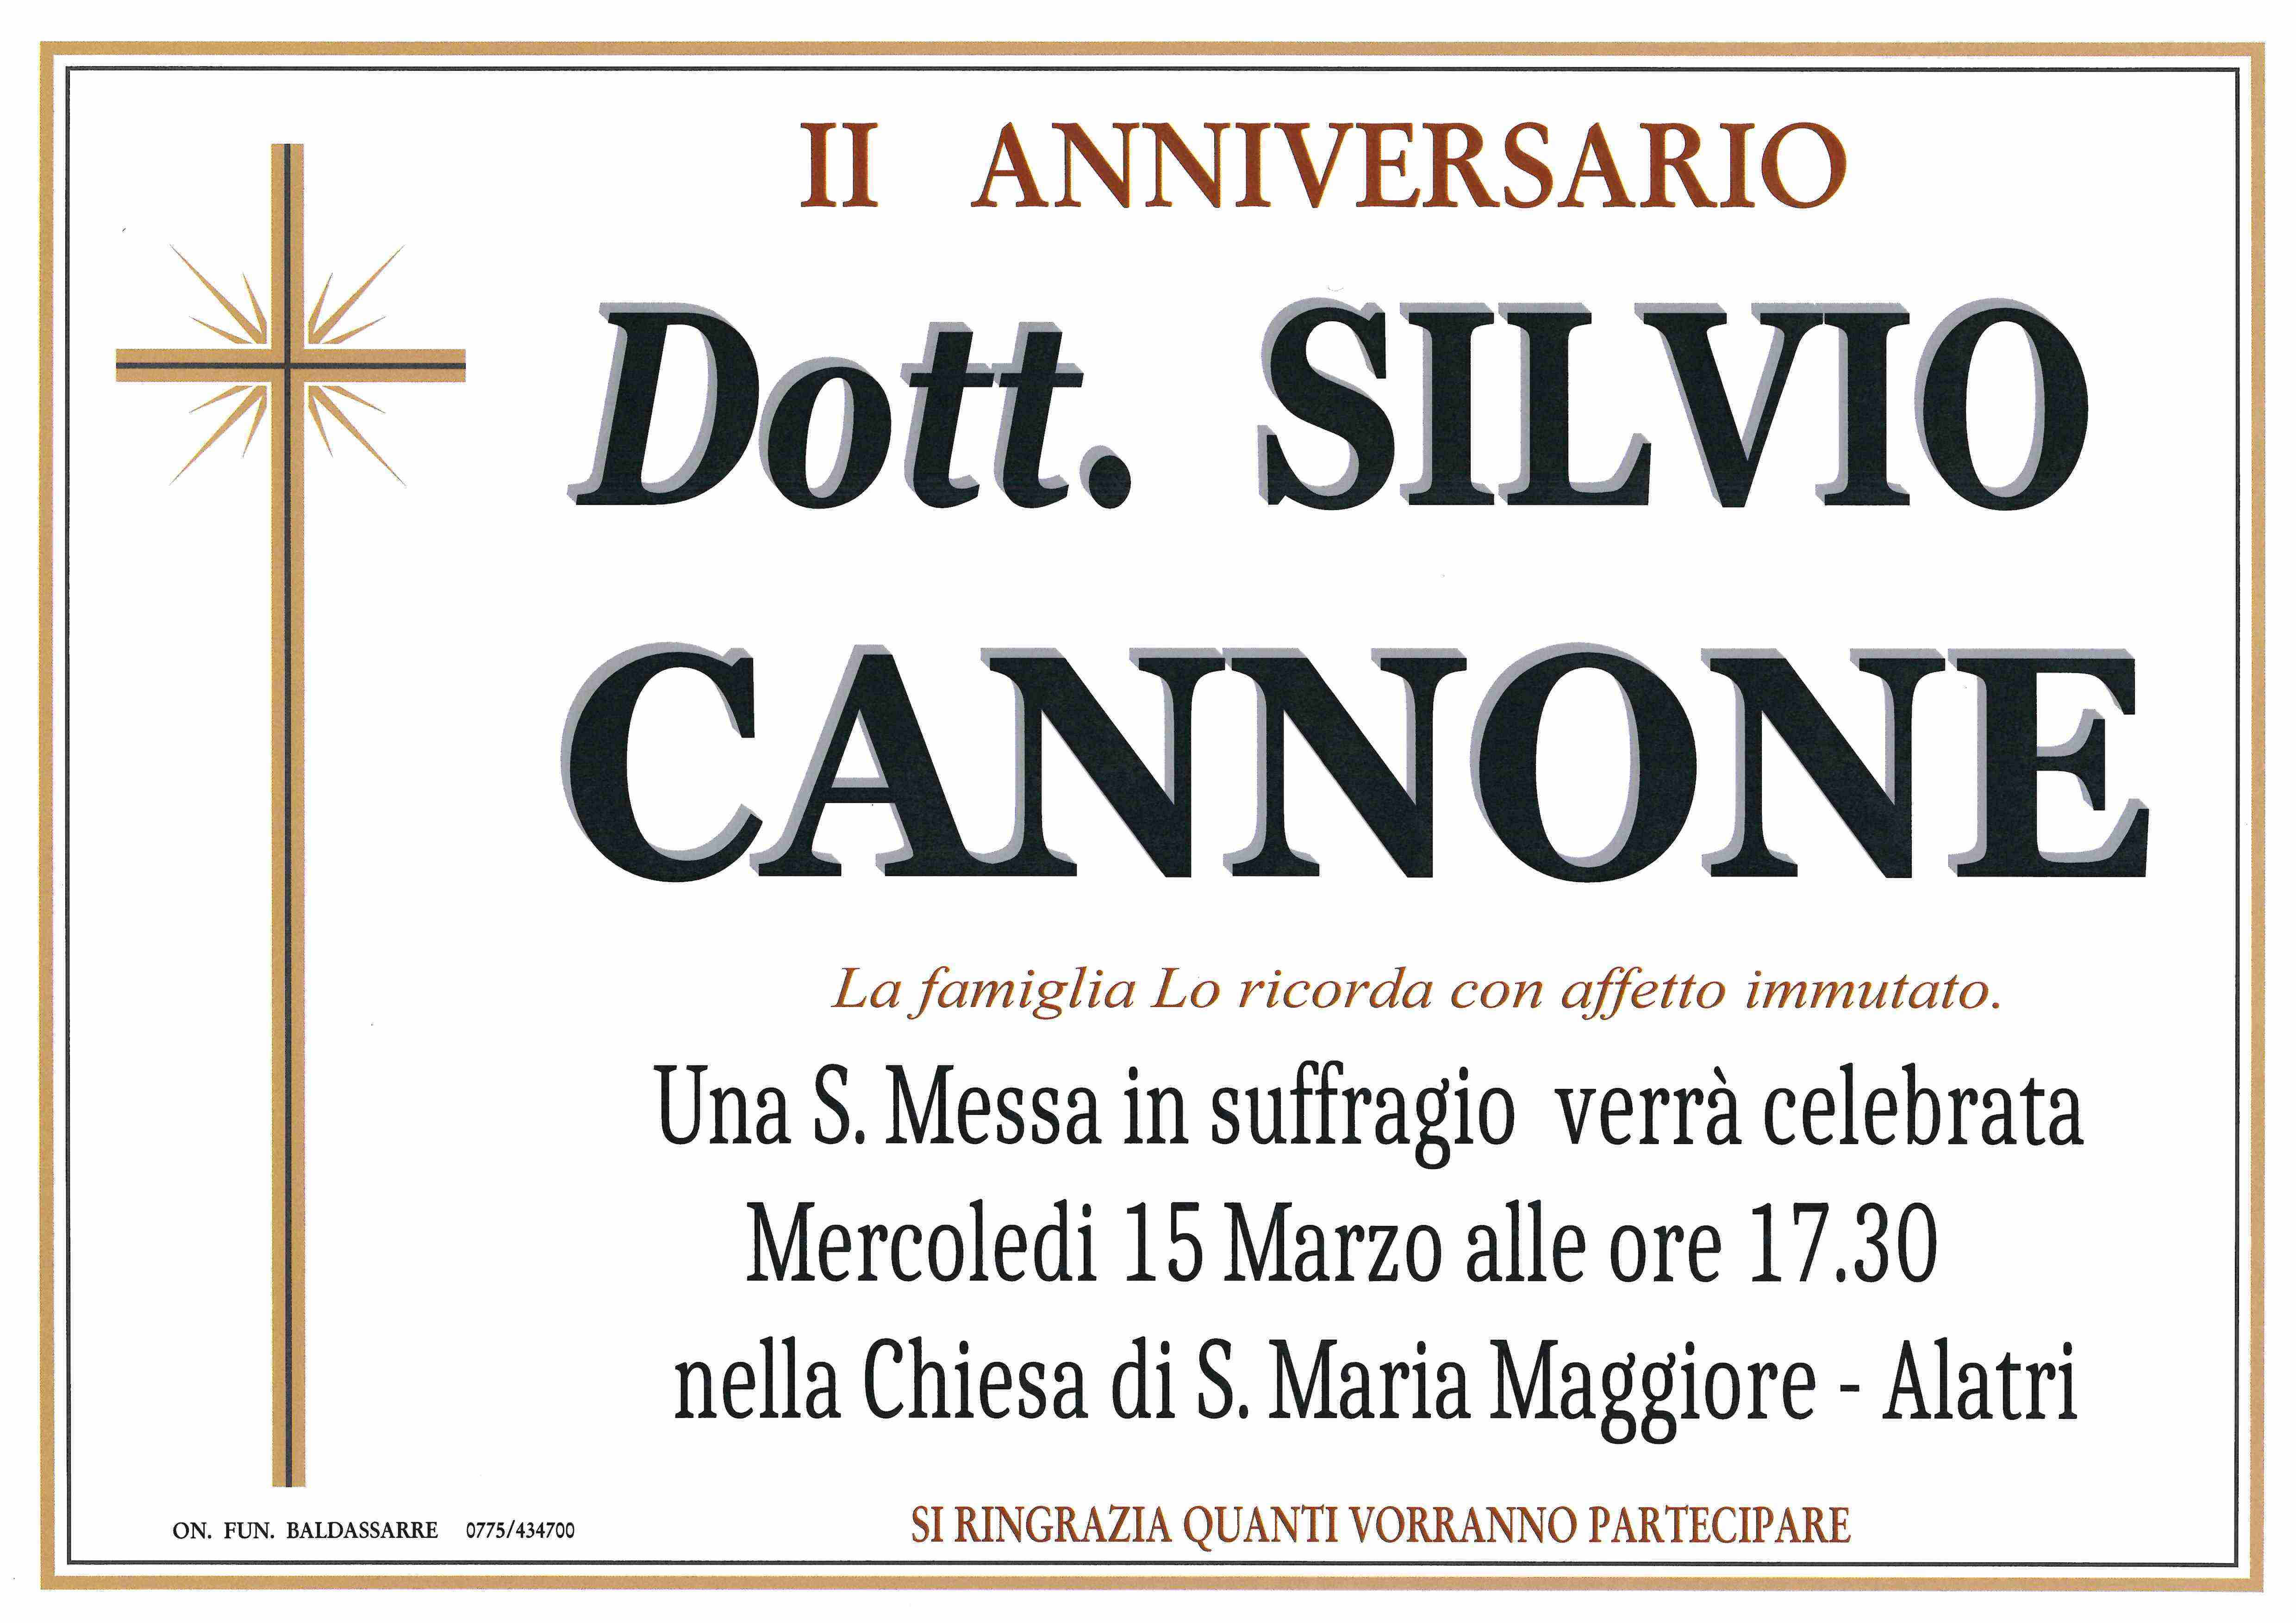 Silvio Cannone